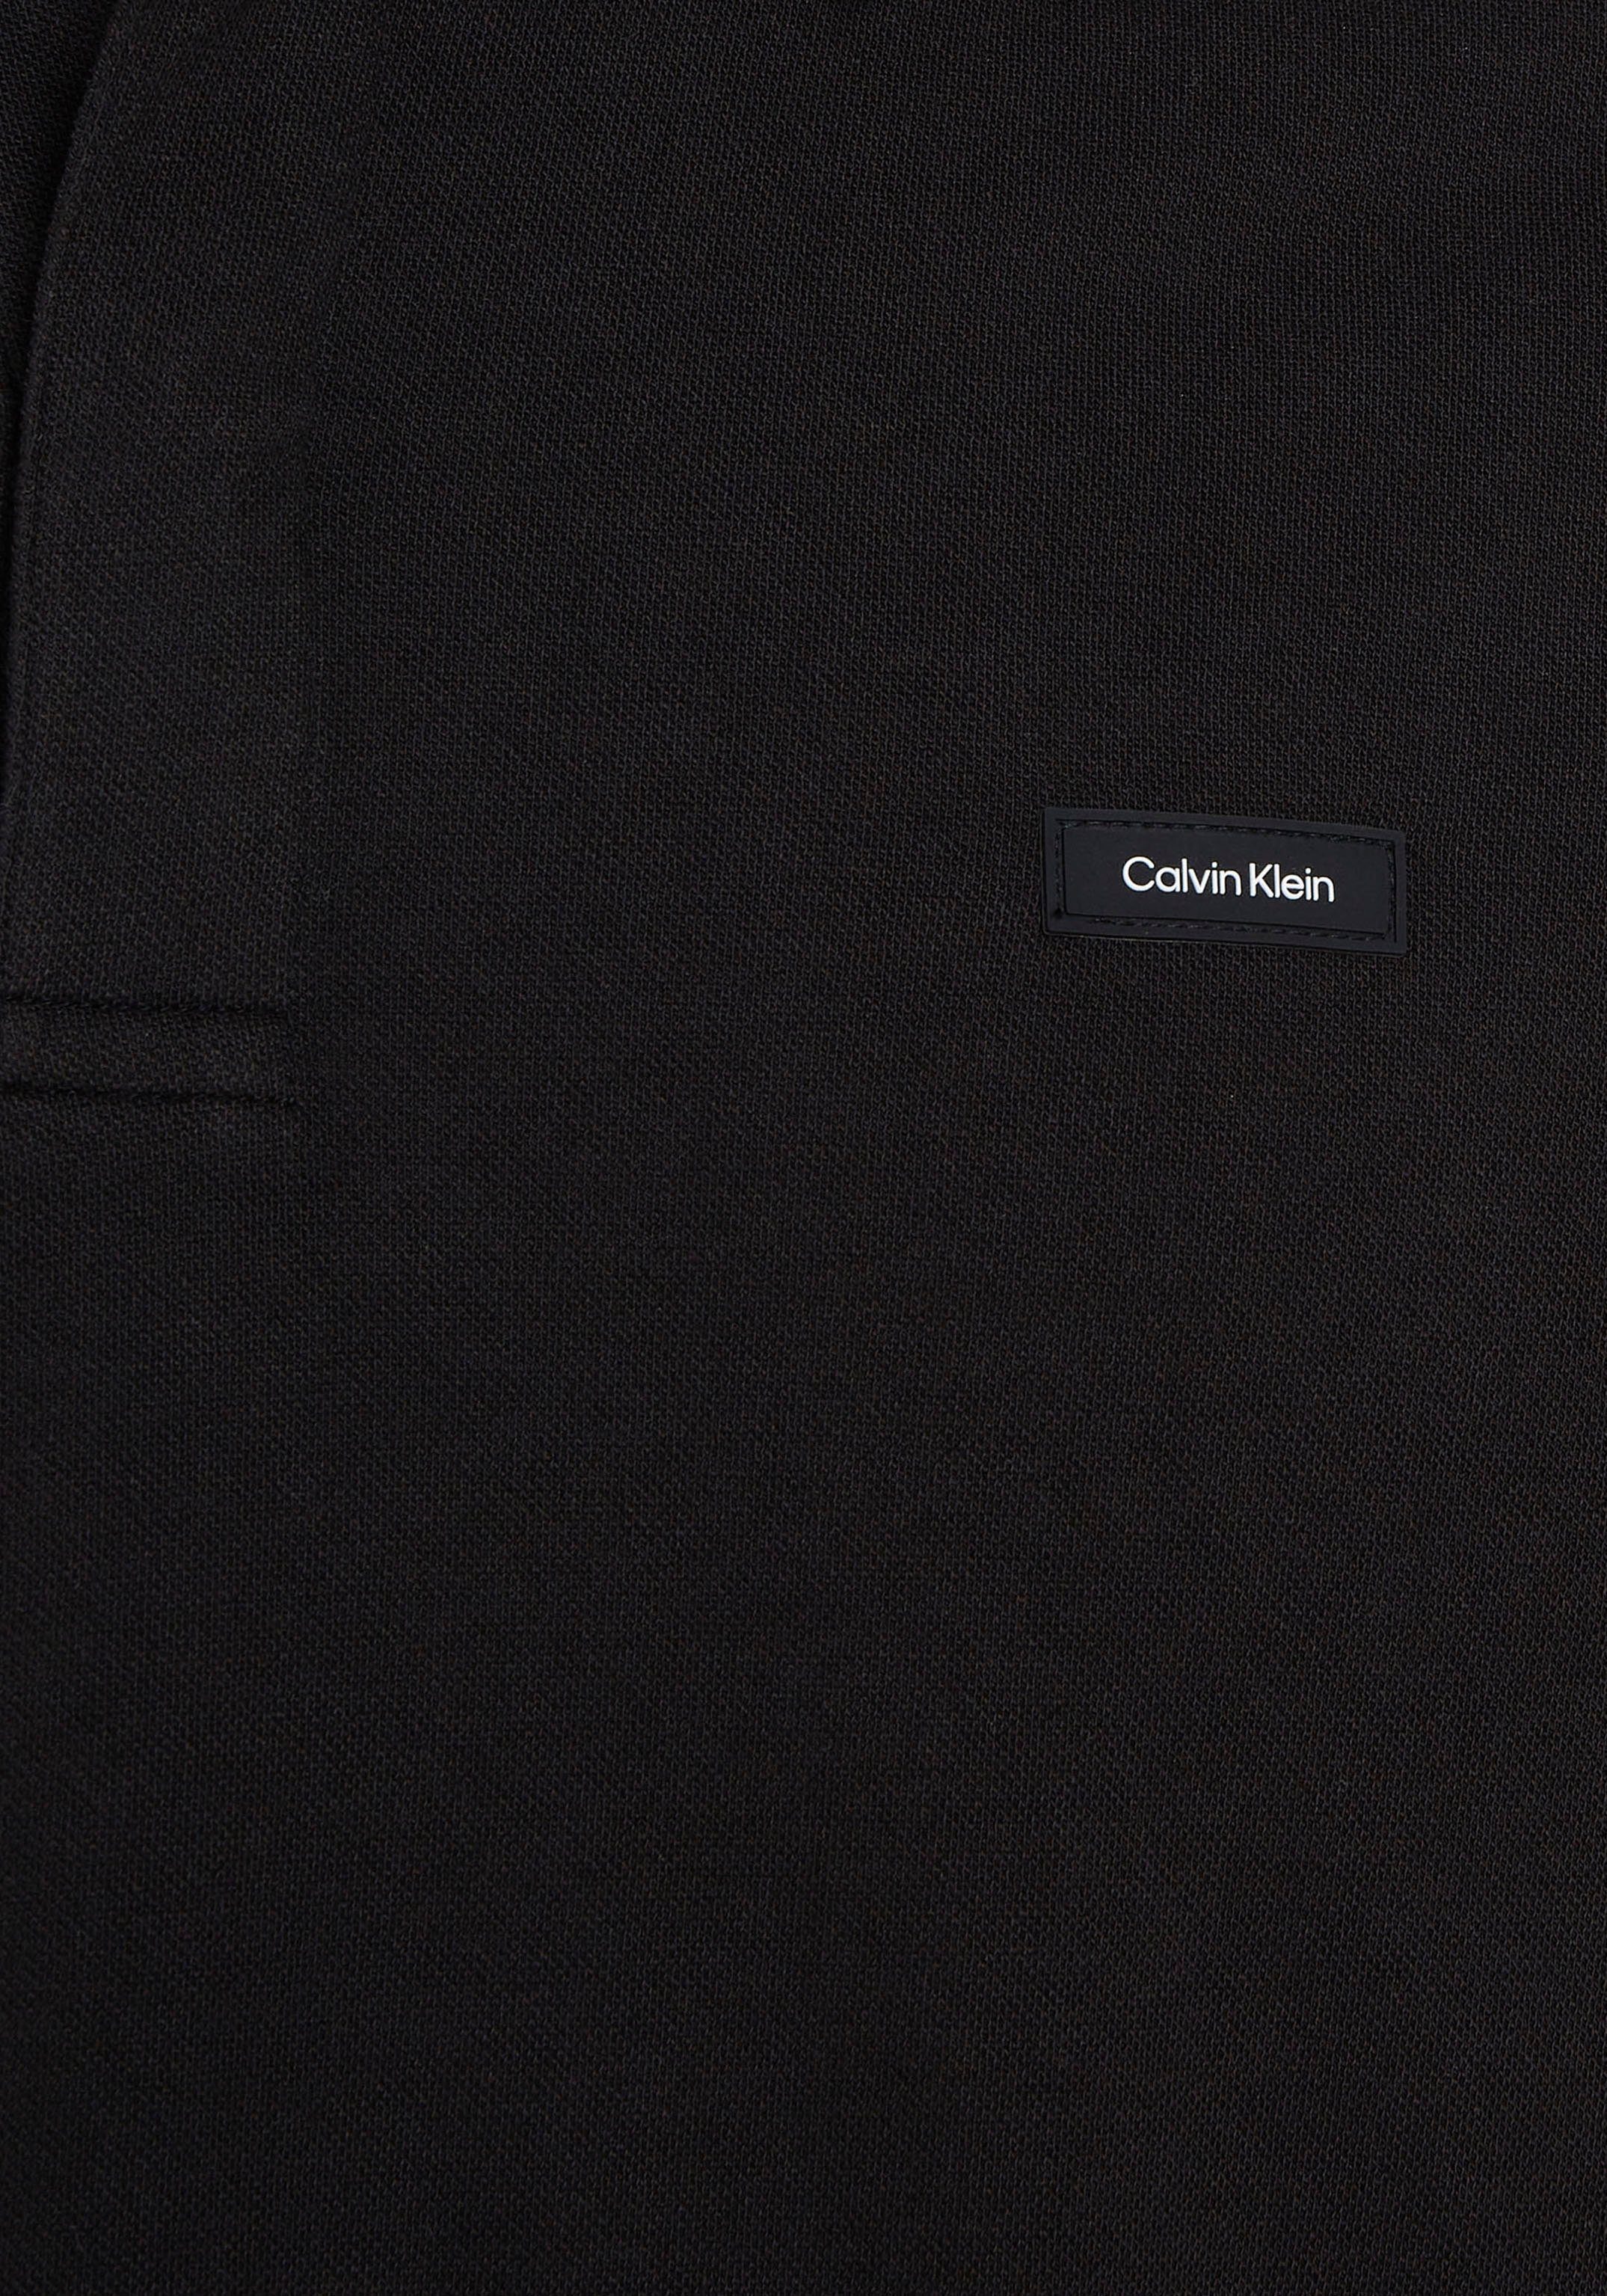 Klein Polokragen PIQUE Poloshirt Black Calvin Ck LS STRETCH mit POLO knopflosem